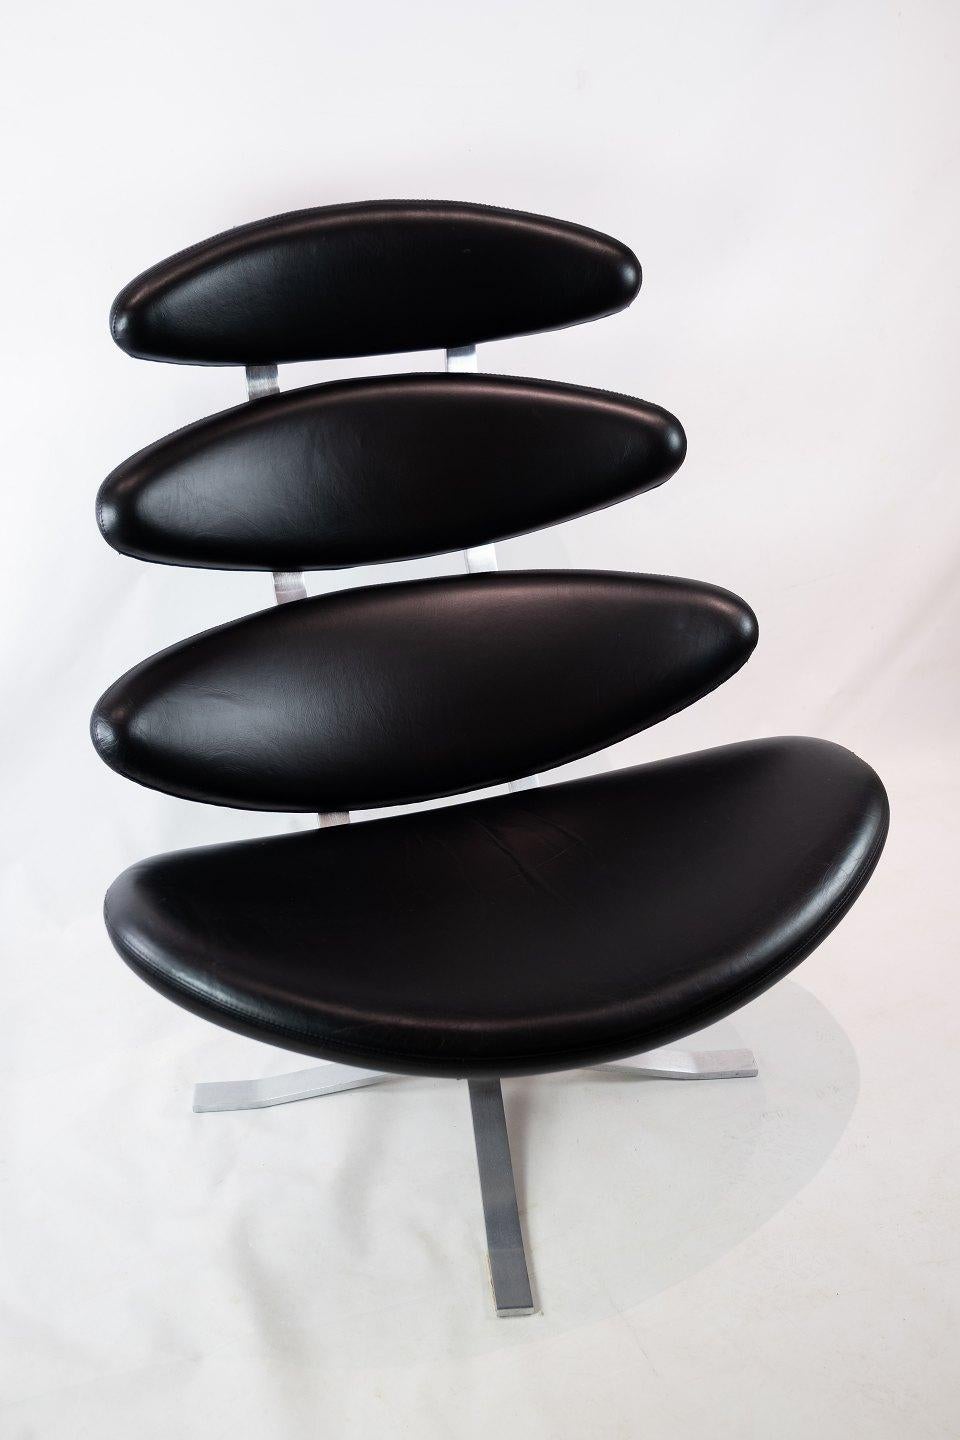 Fauteuil Corona, modèle EJ 5, conçu par Poul M. Volther en 1964 et fabriqué chez Erik Jørgensen. La chaise est recouverte de cuir cava noir.
  